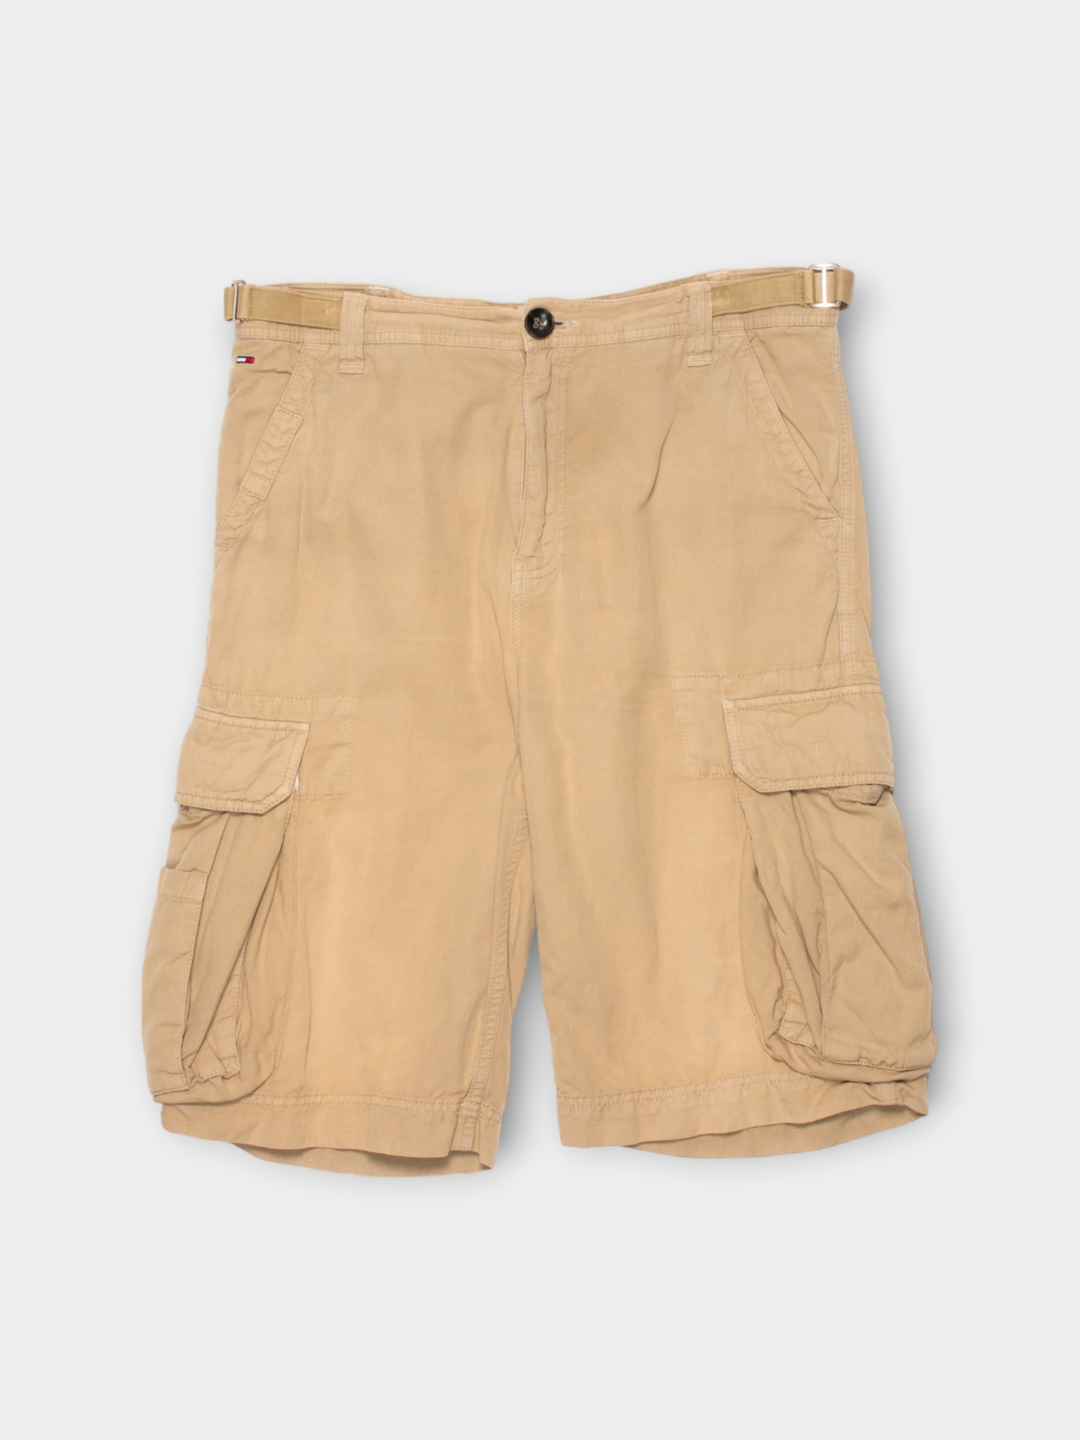 Vintage Tommy Hilfiger Cargo Shorts (34")